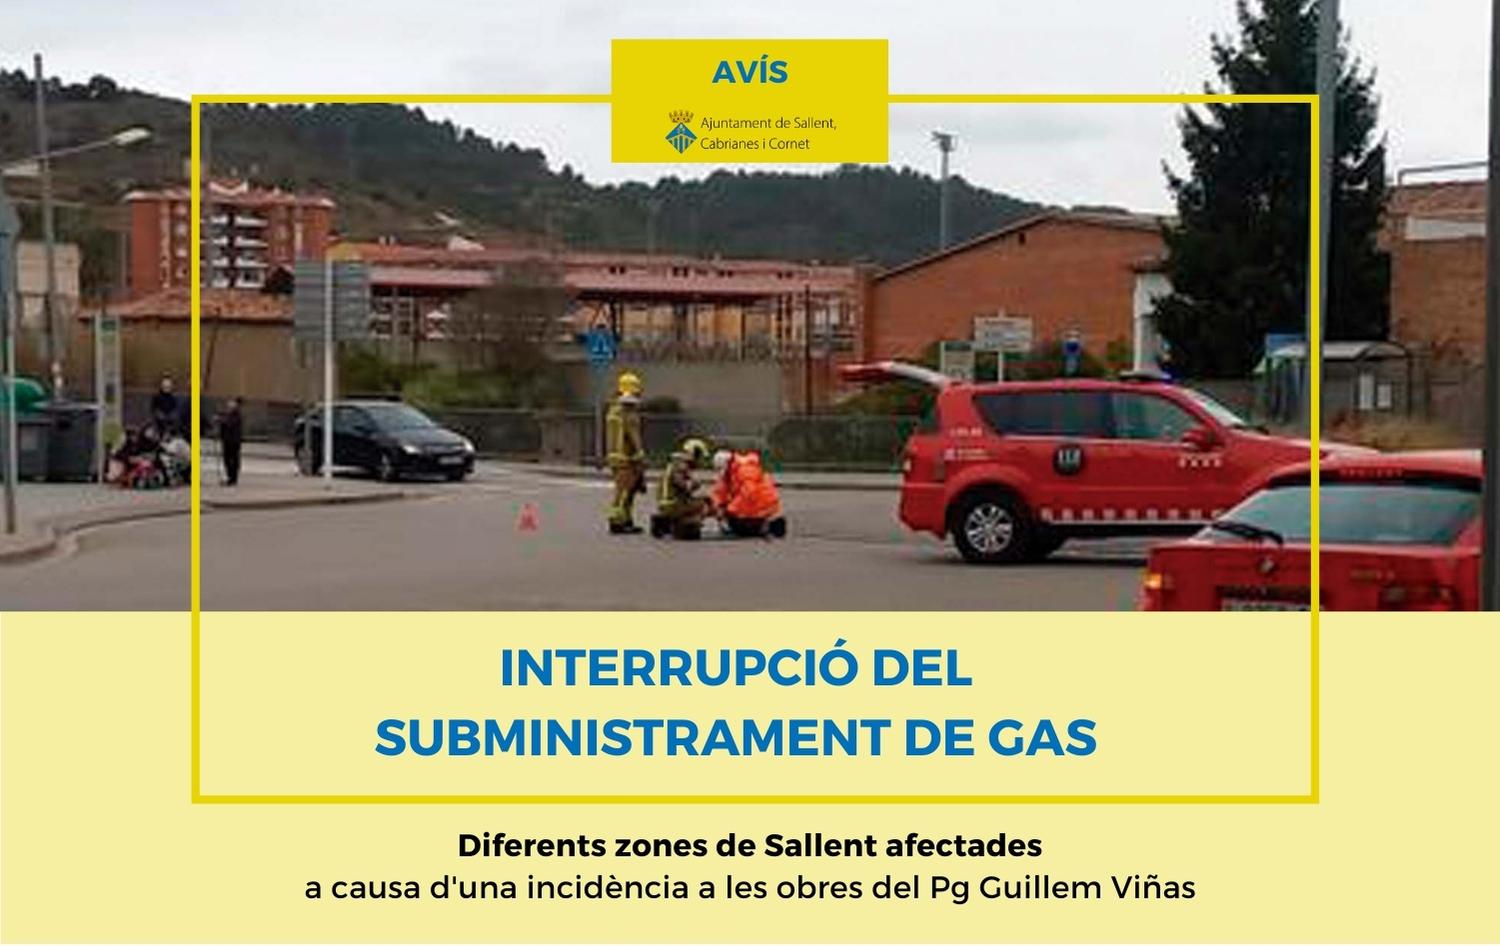 Avís d'interrupció del subministrament de gas a causa d'una incidència